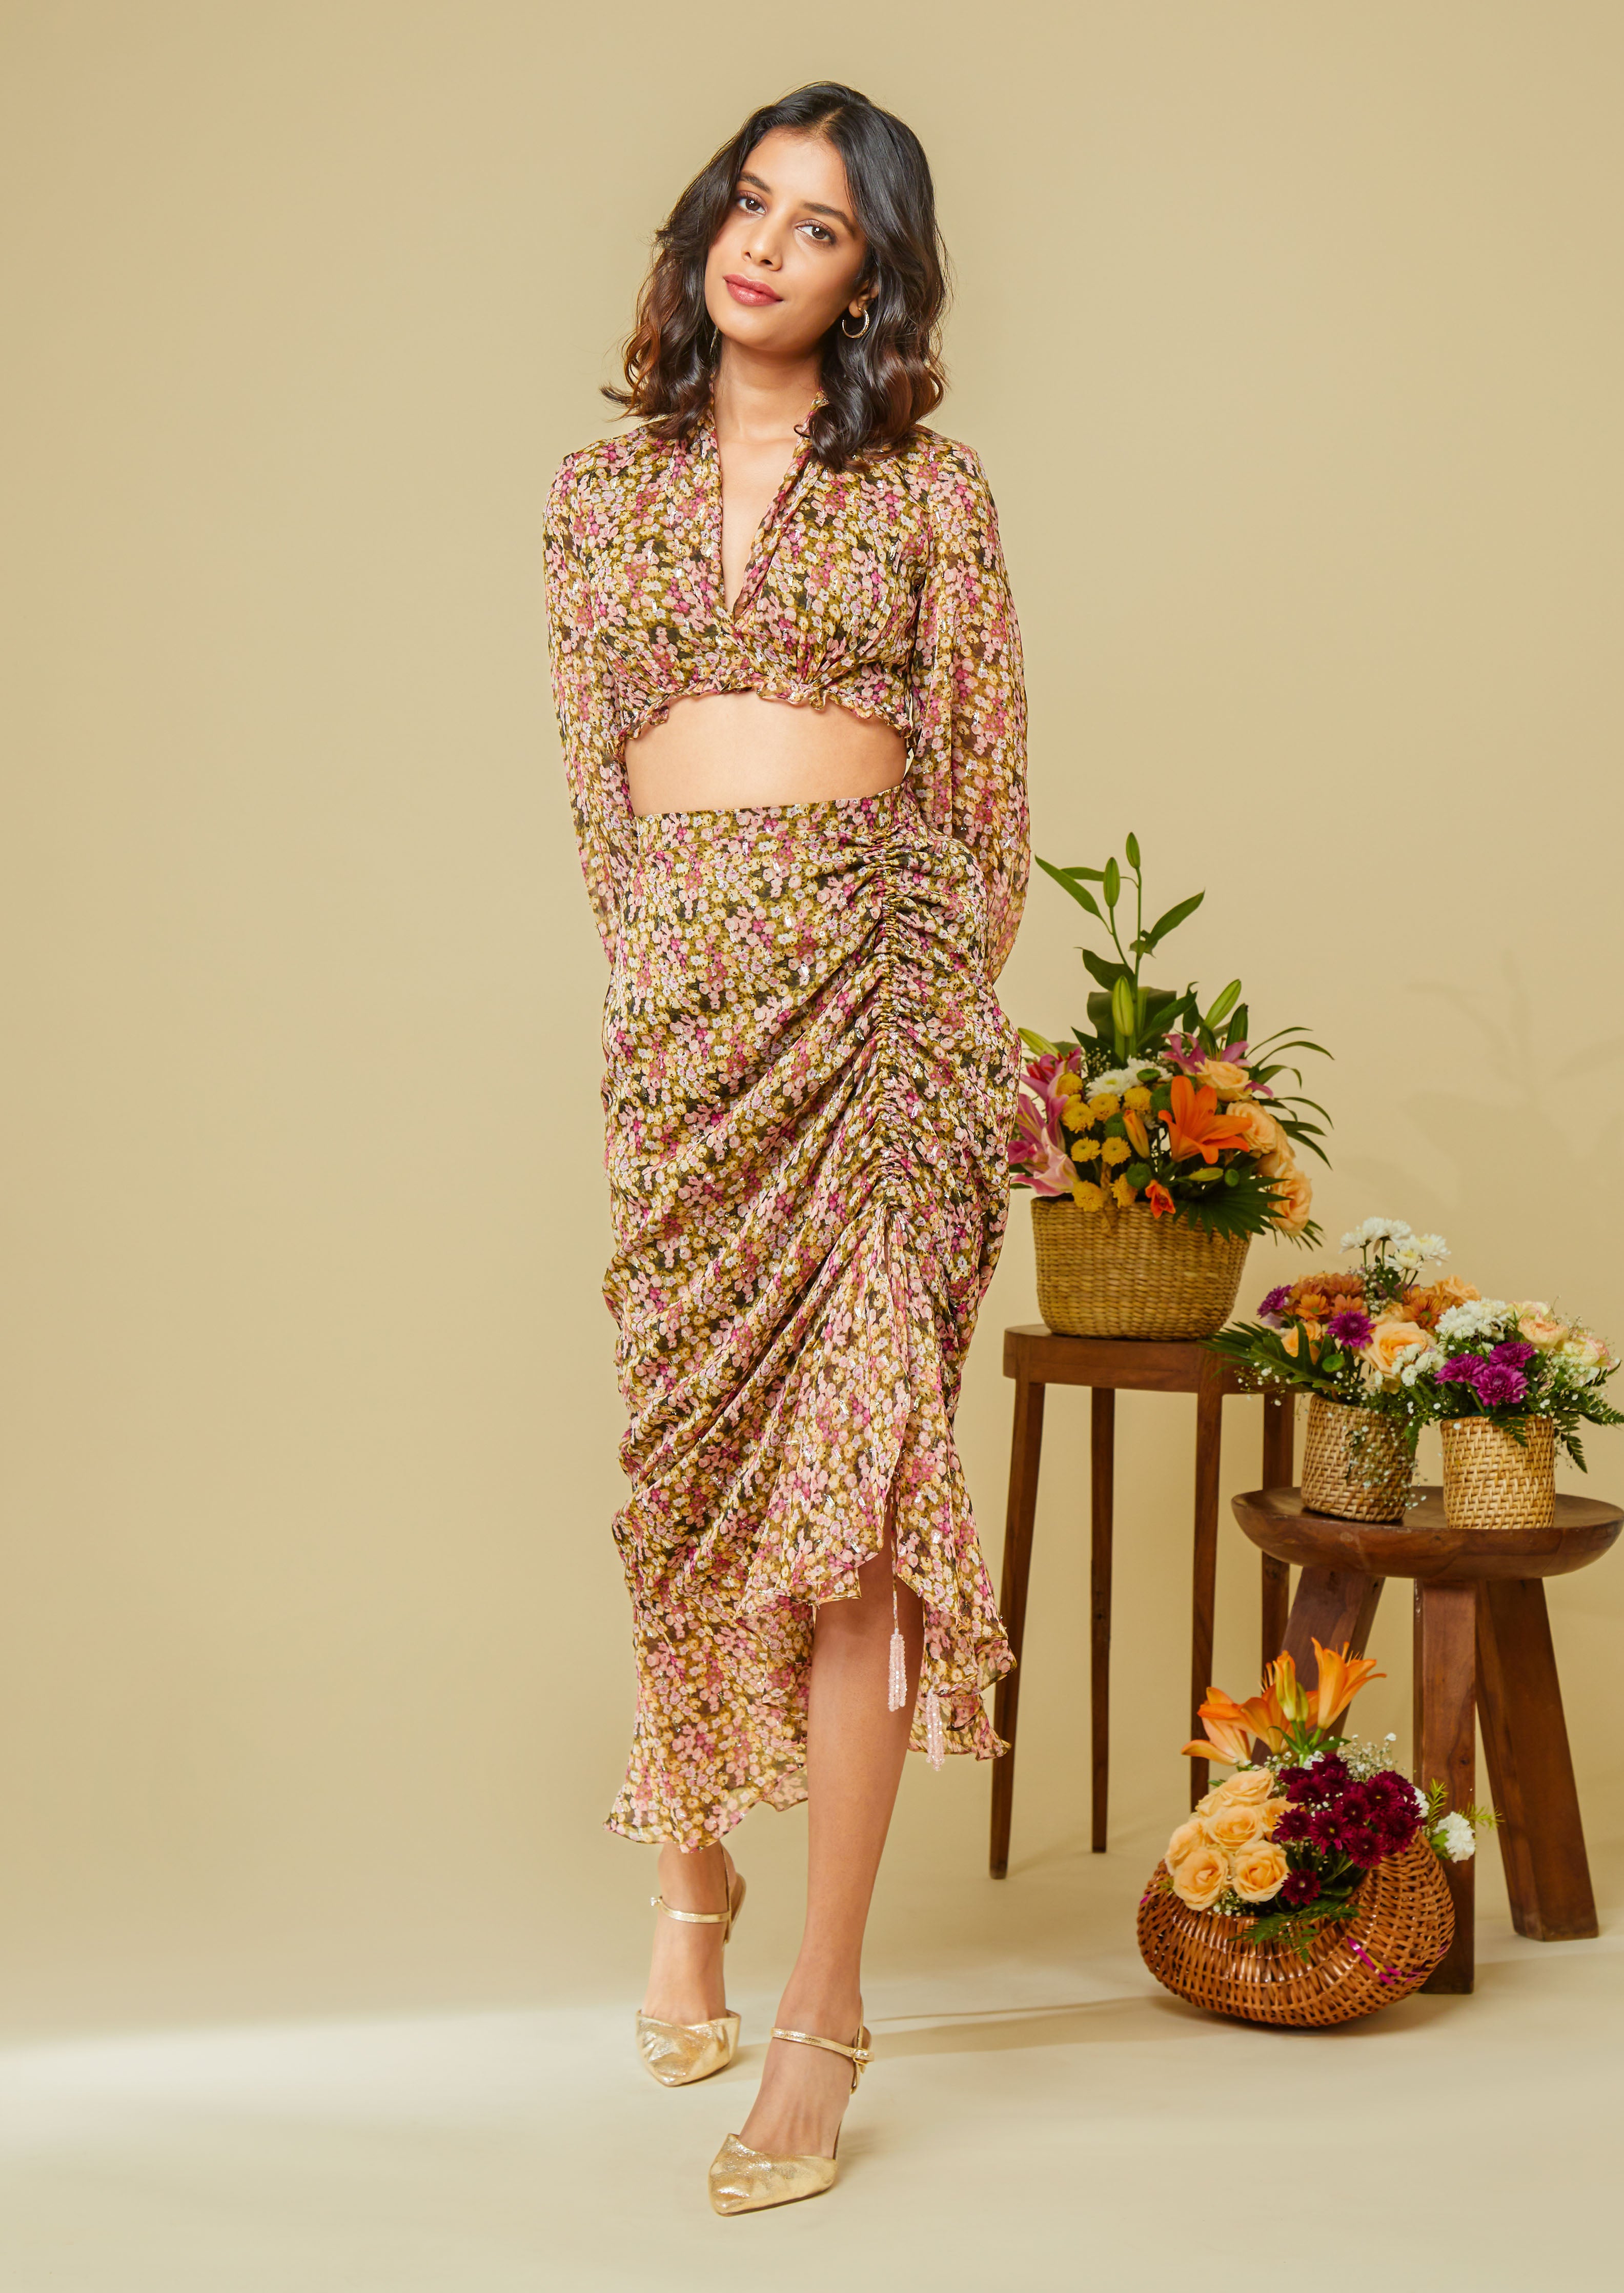 Mishka ruffle skirt in the Anaisha print